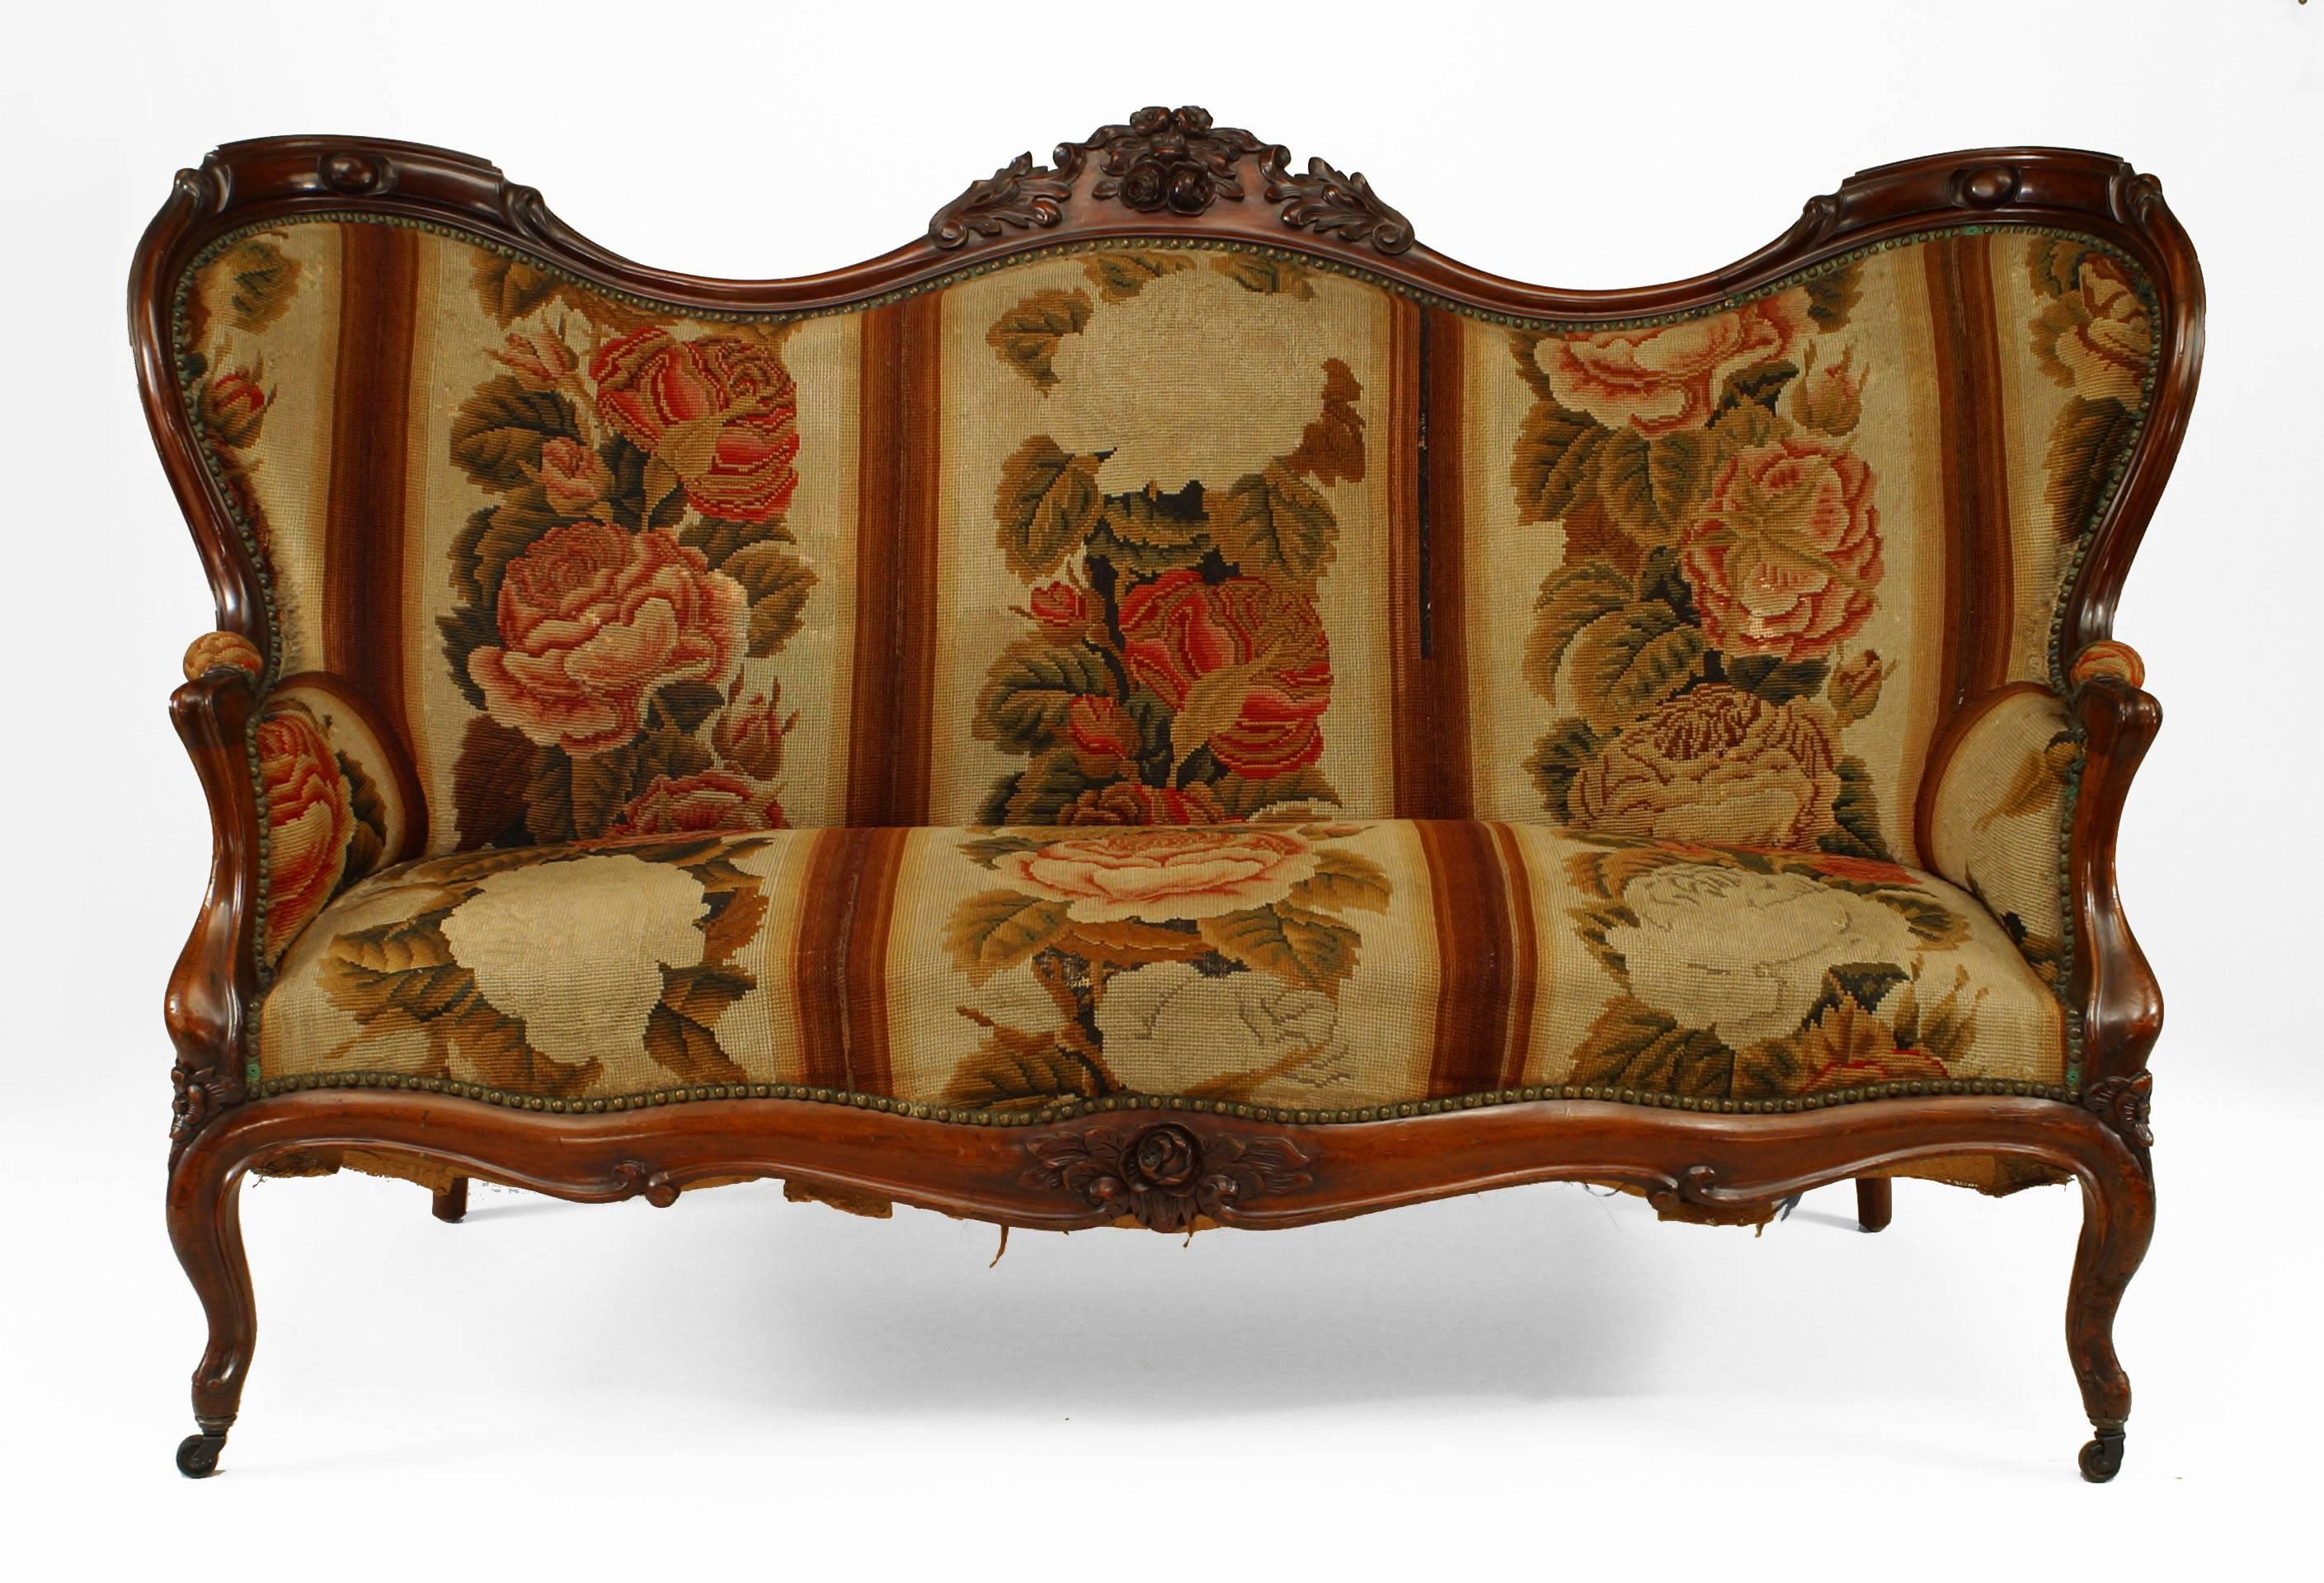 Ensemble de 11 meubles de salon en bois de rose de style victorien américain avec crête de dossier sculptée et tapisserie florale (canapé, 4 fauteuils, 6 chaises latérales)
